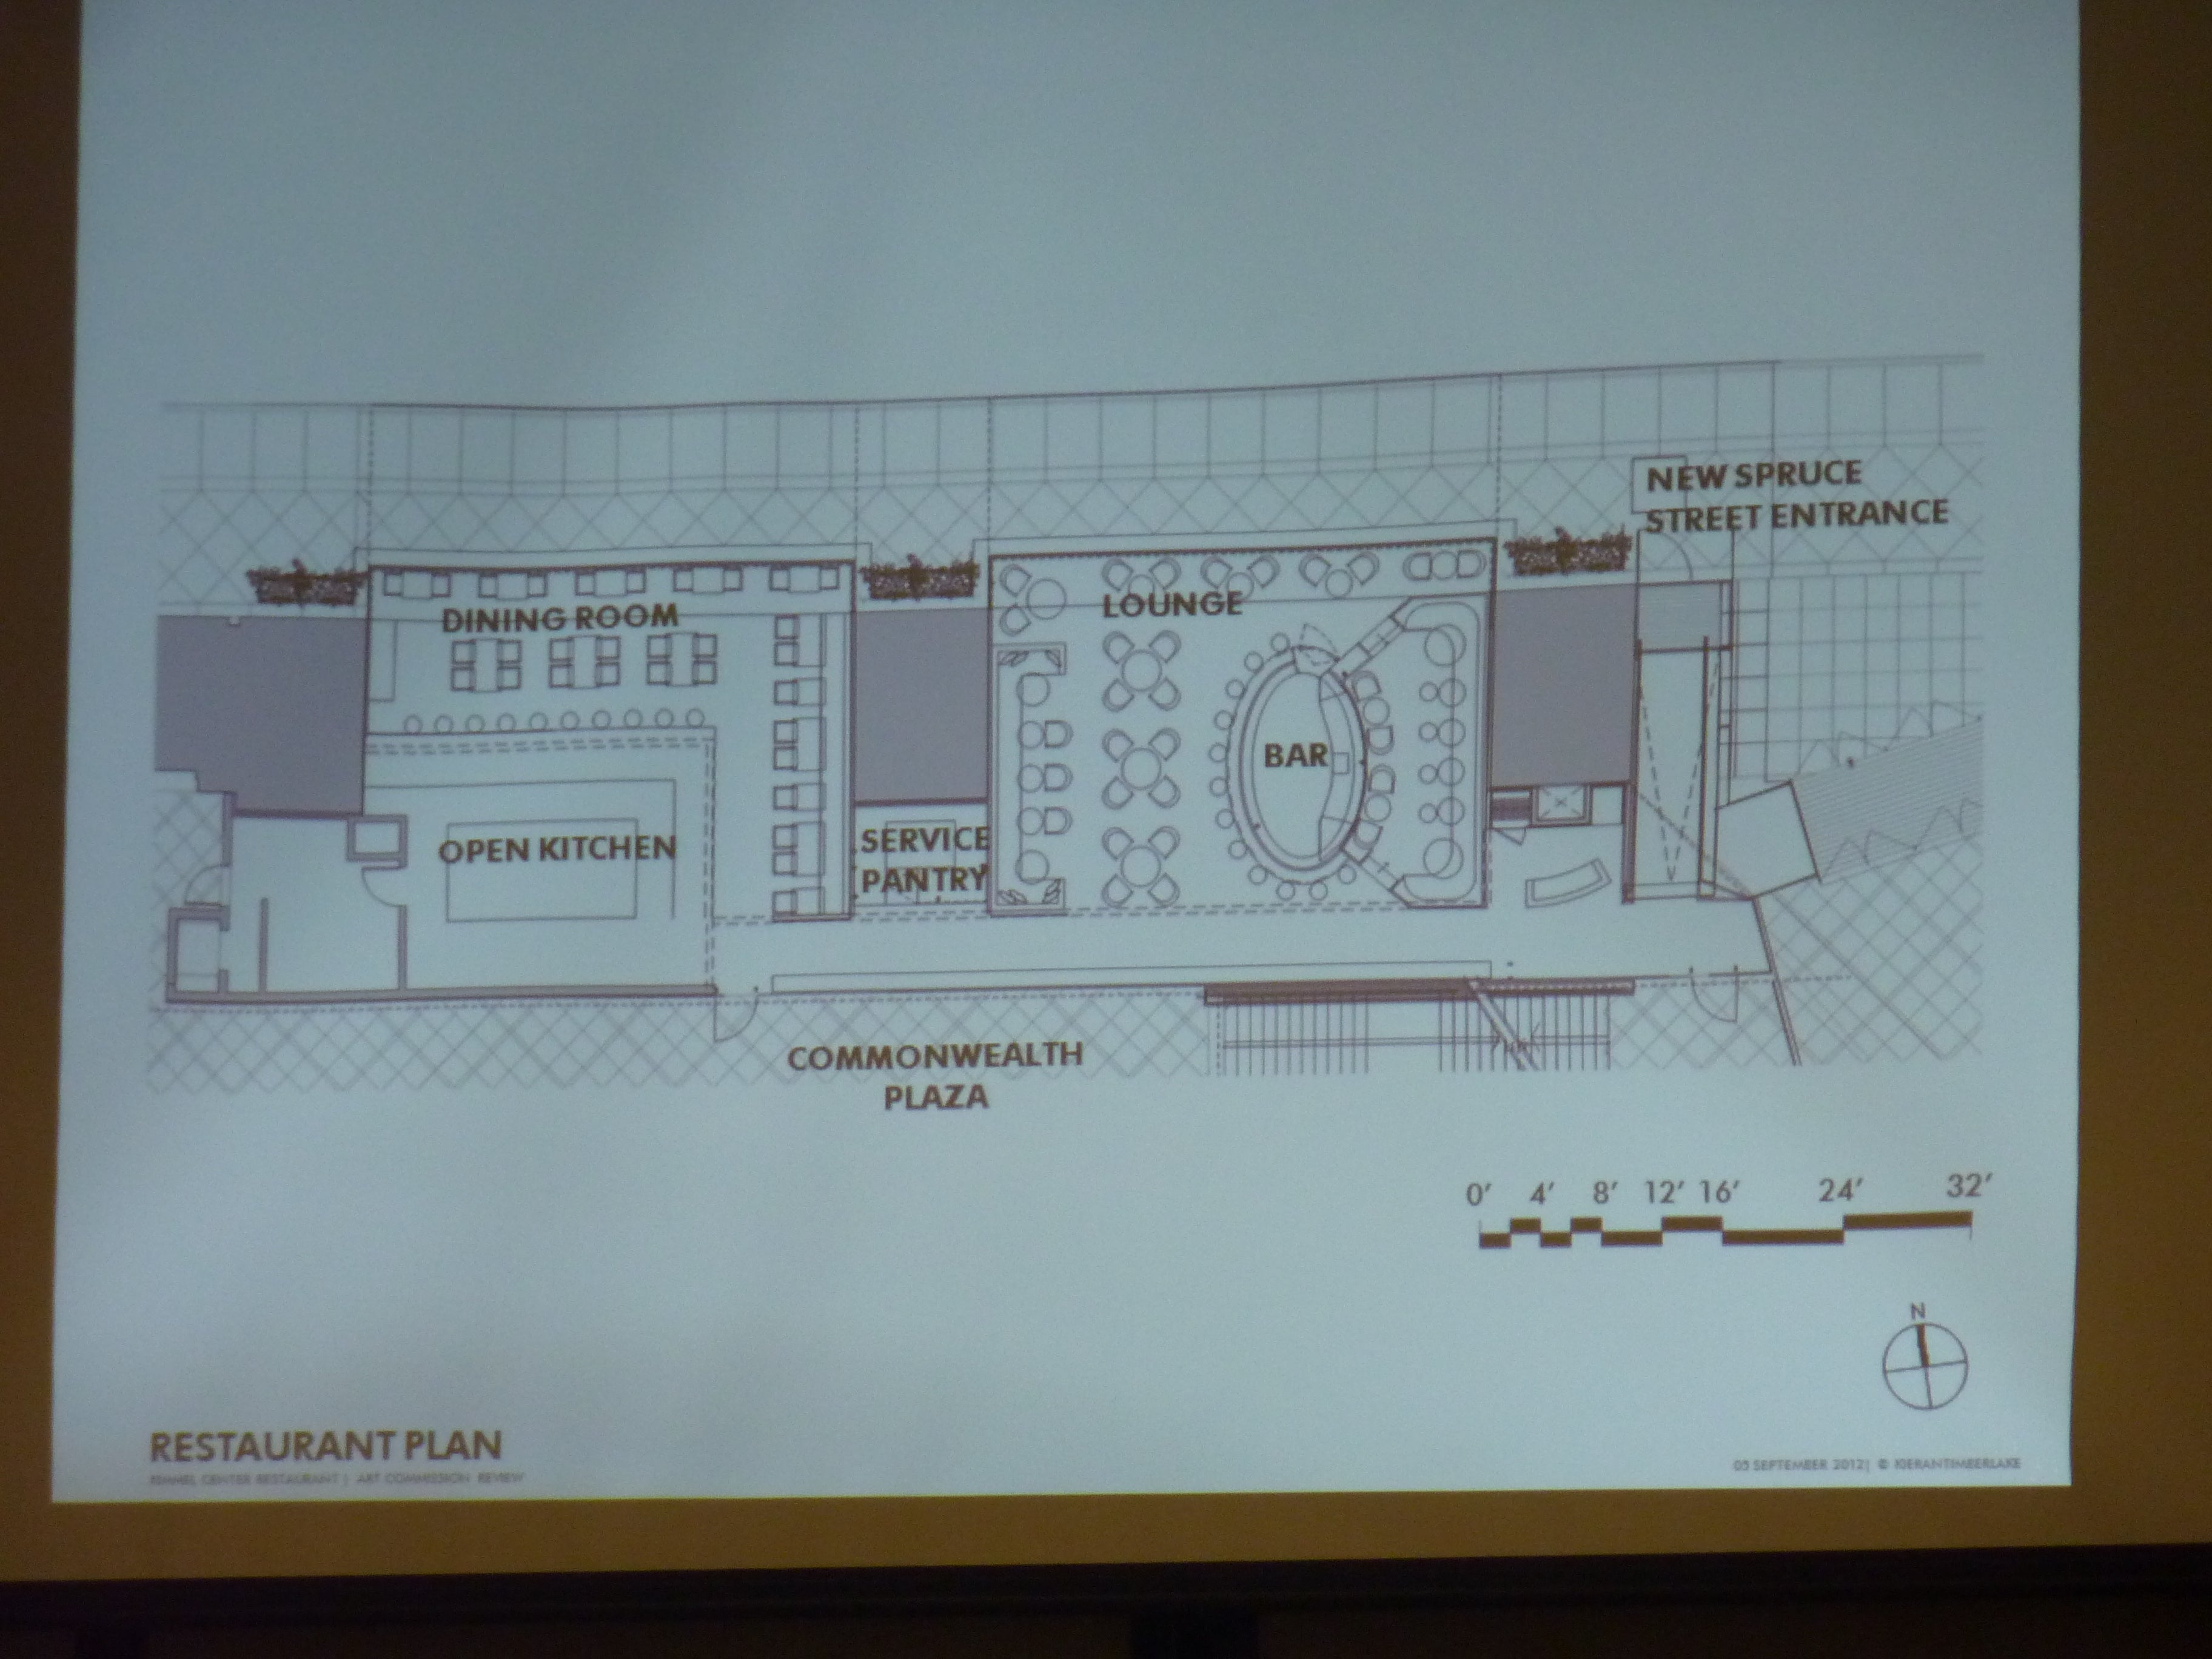 Floorplan for Kimmel Center restaurant